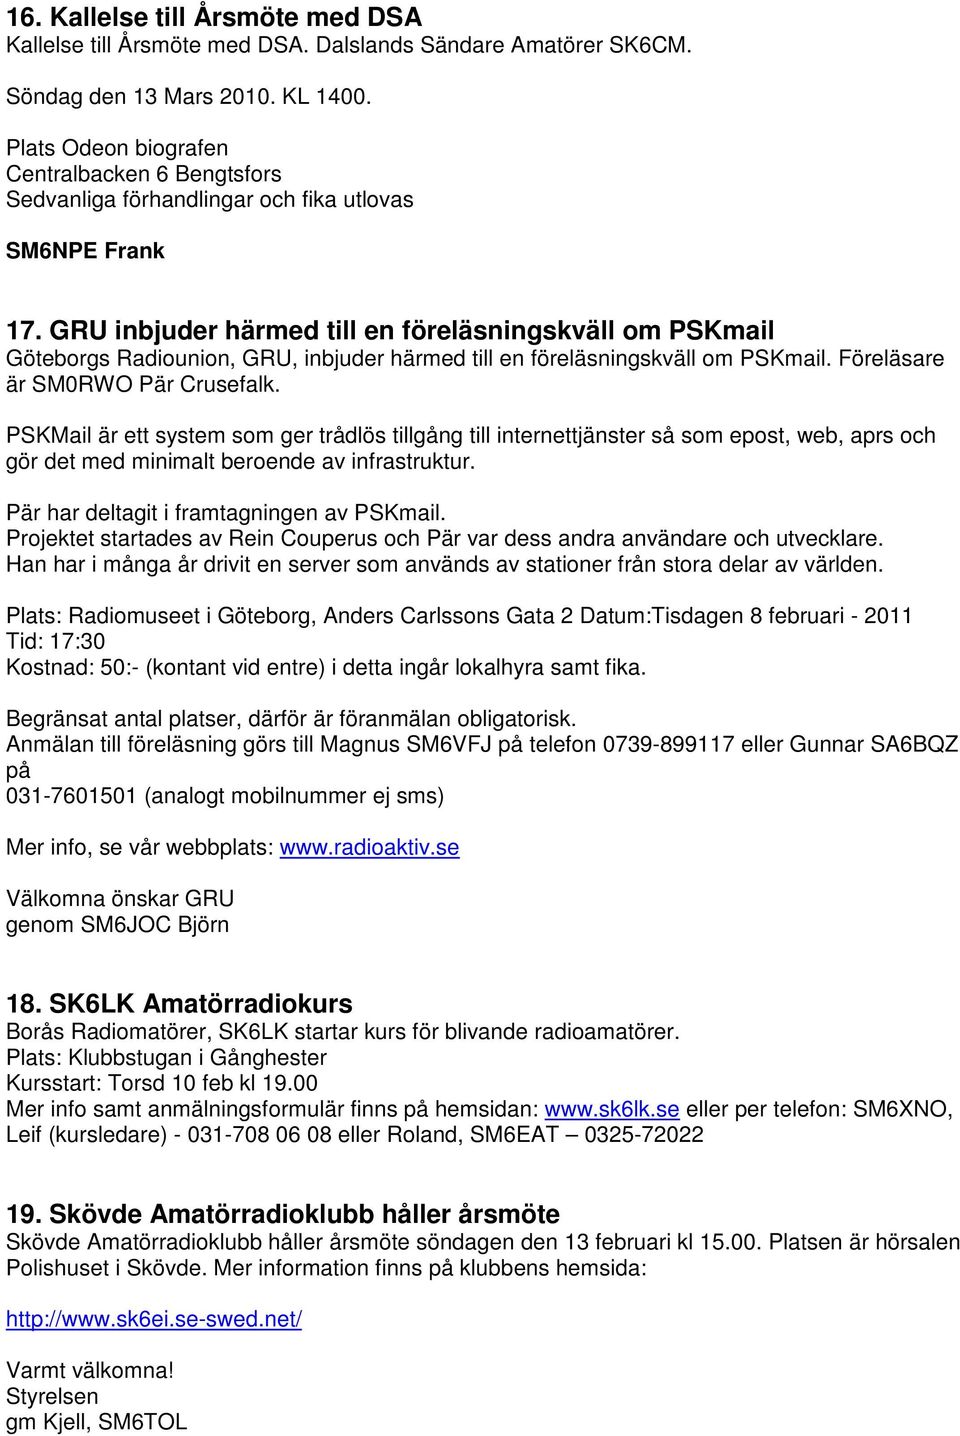 GRU inbjuder härmed till en föreläsningskväll om PSKmail Göteborgs Radiounion, GRU, inbjuder härmed till en föreläsningskväll om PSKmail. Föreläsare är SM0RWO Pär Crusefalk.